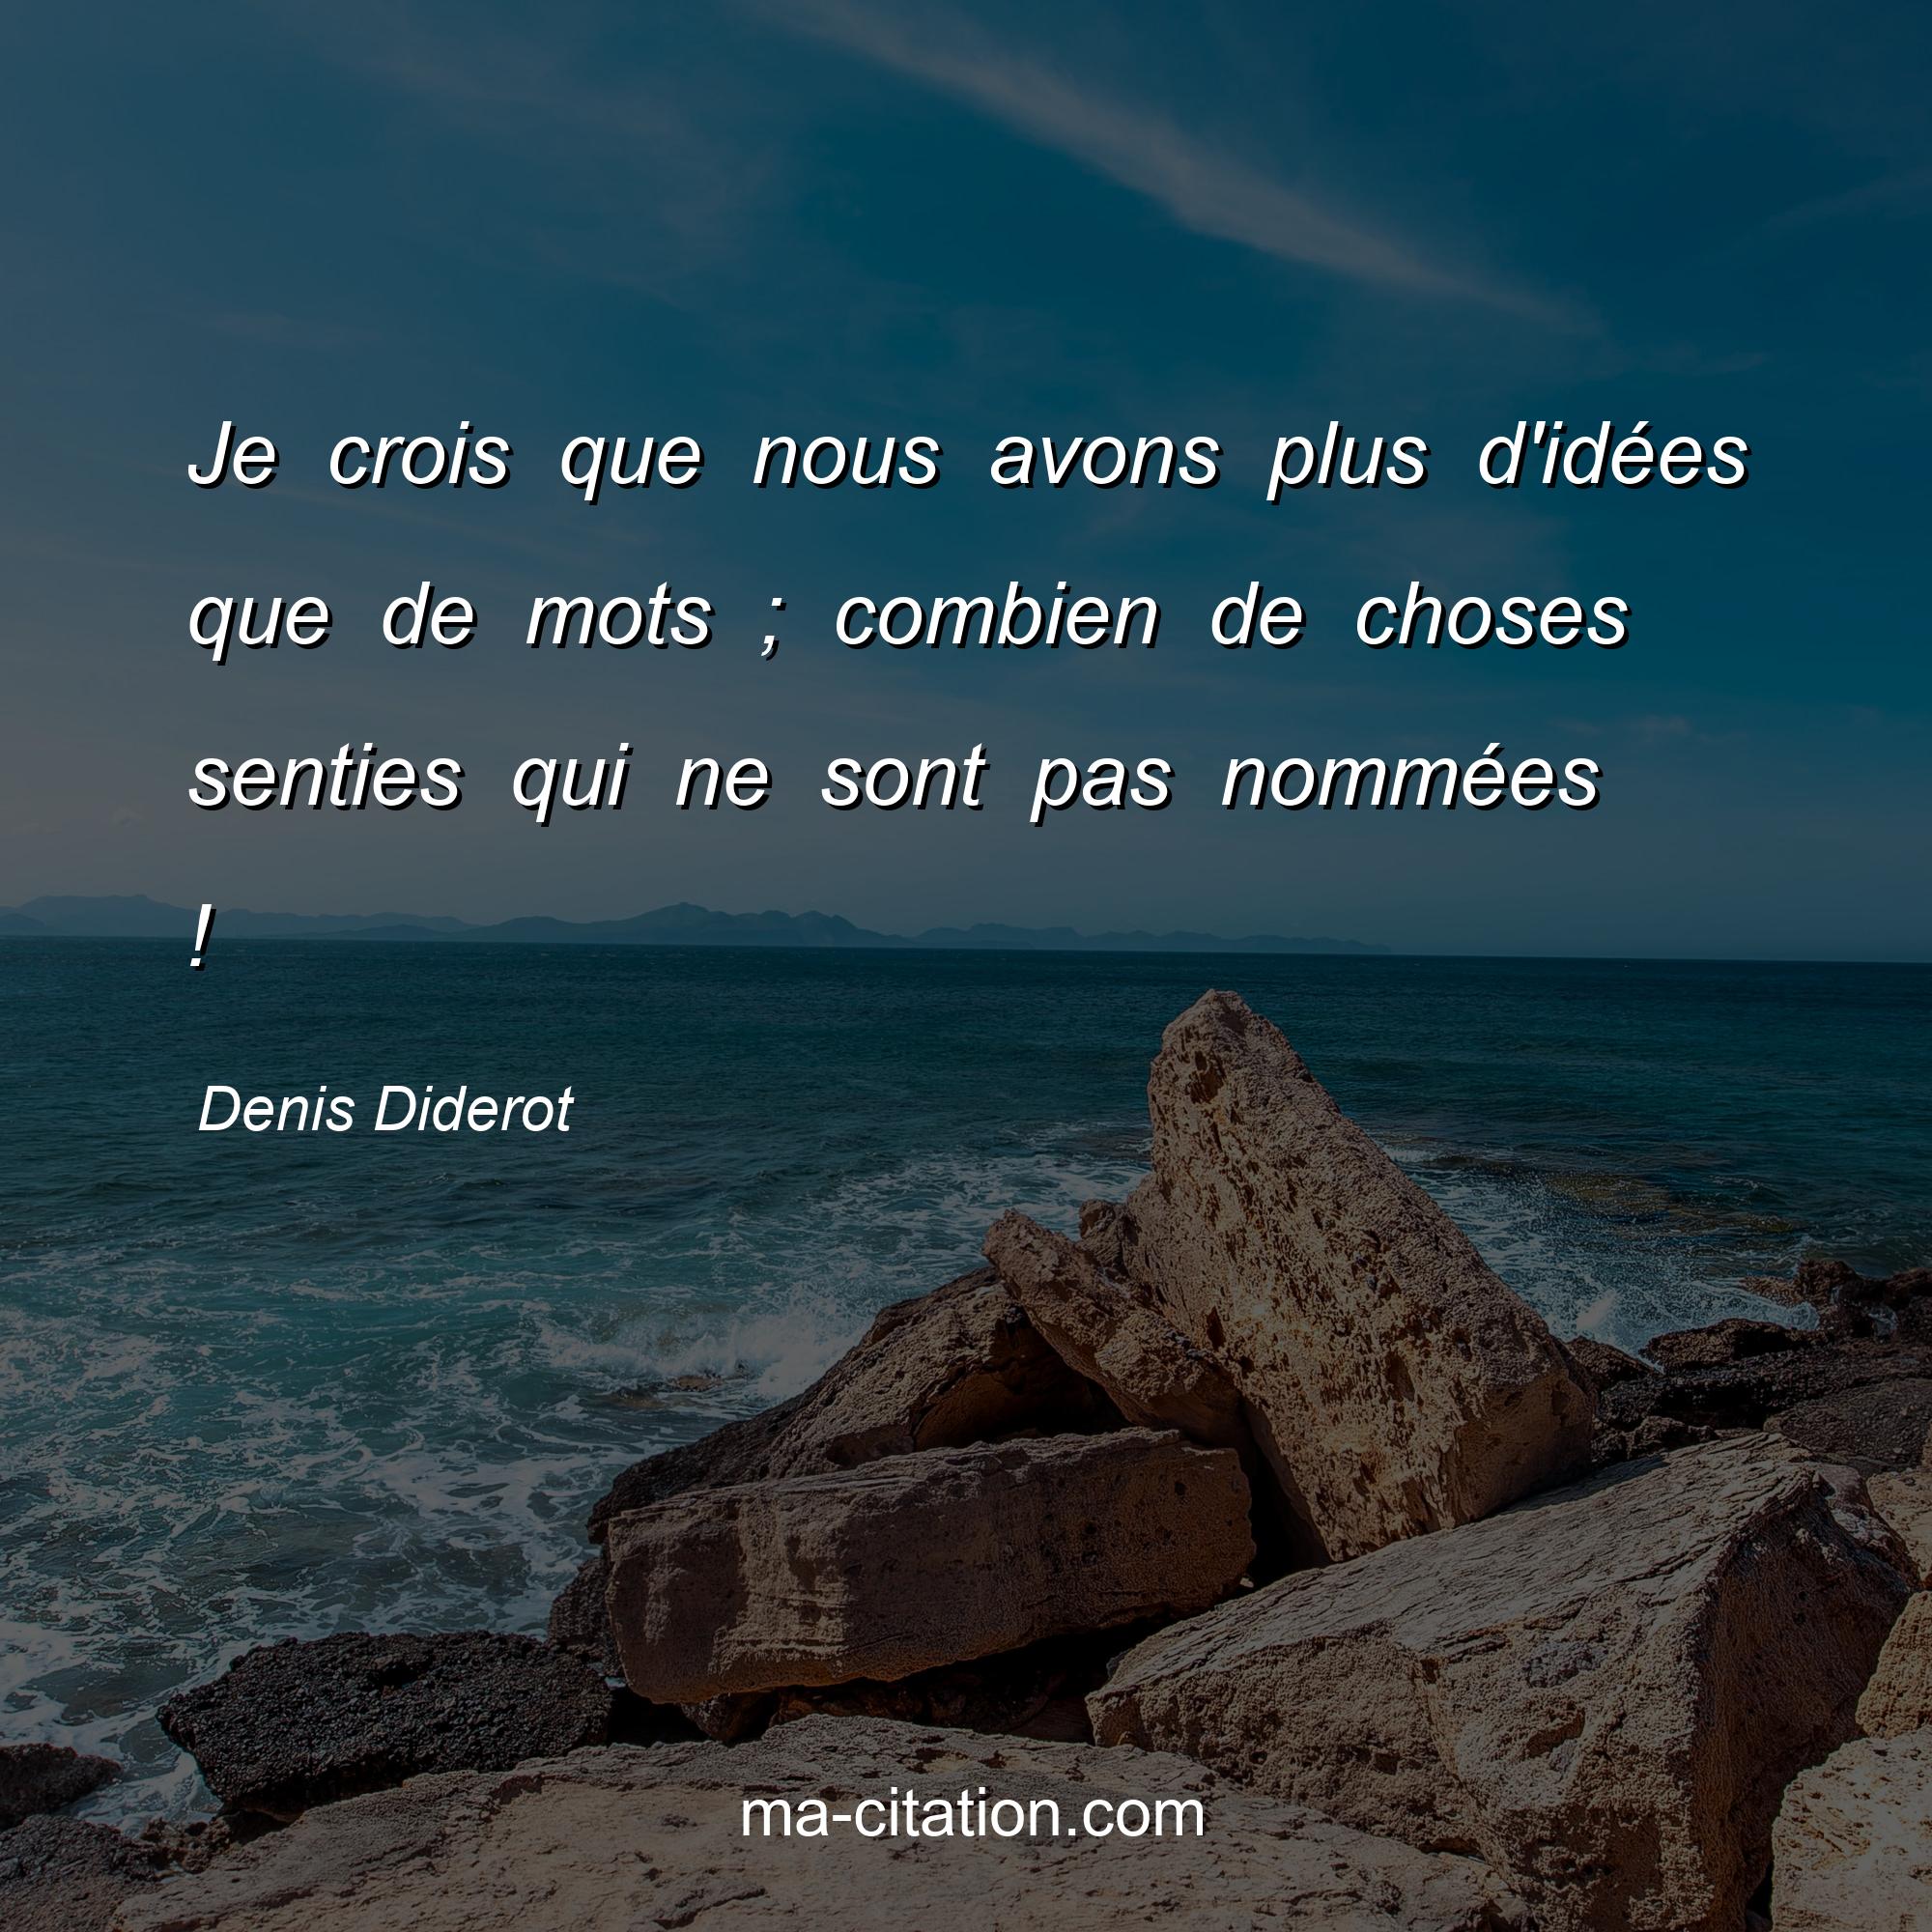 Denis Diderot : Je crois que nous avons plus d'idées que de mots ; combien de choses senties qui ne sont pas nommées !